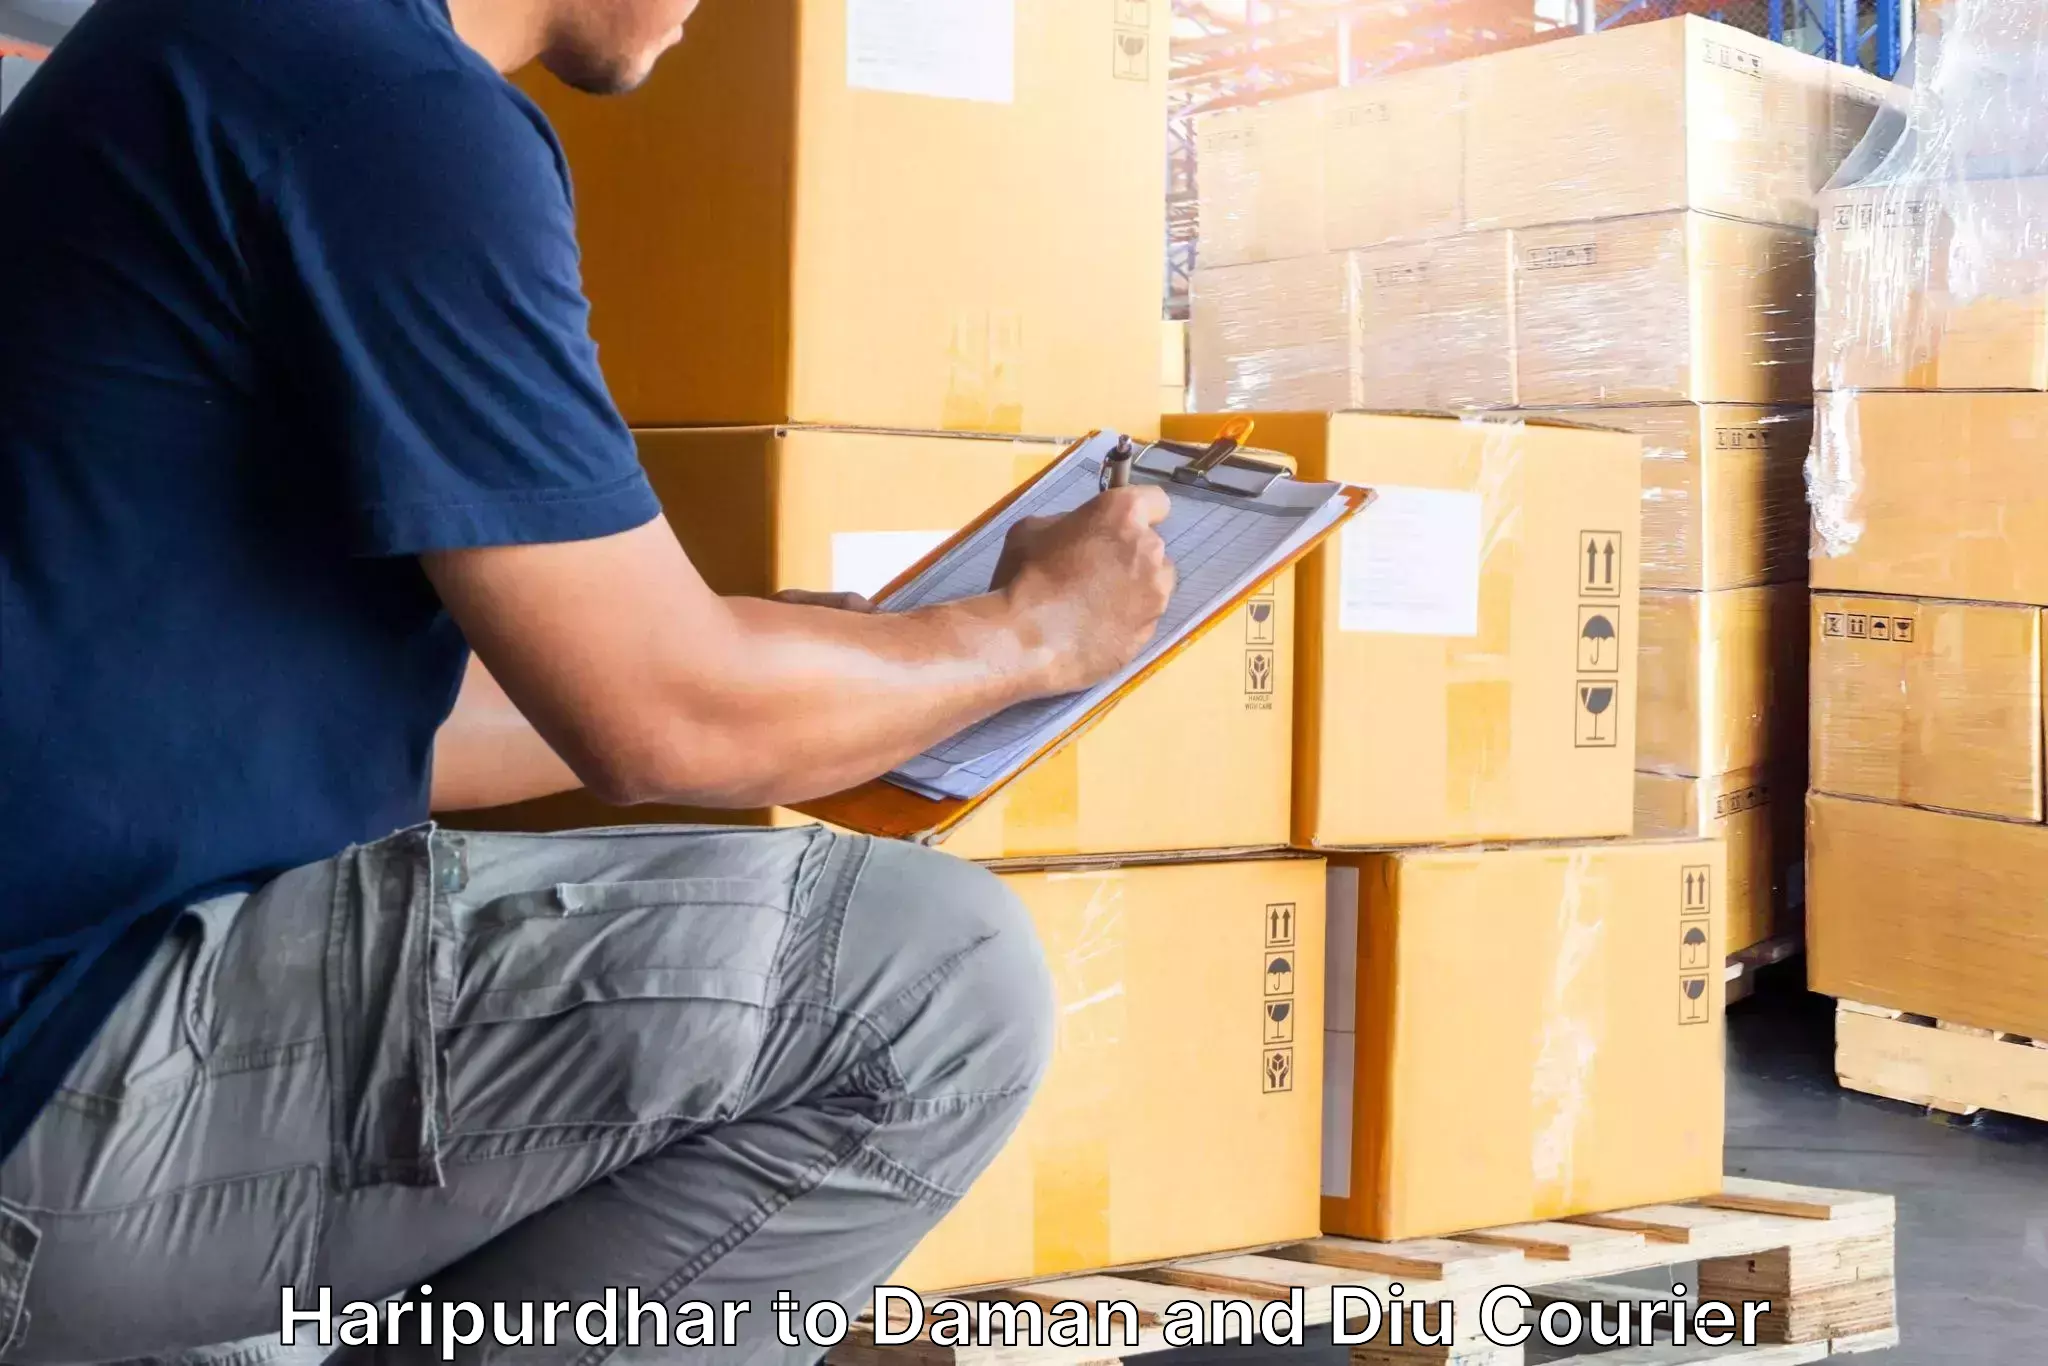 Furniture transport service Haripurdhar to Daman